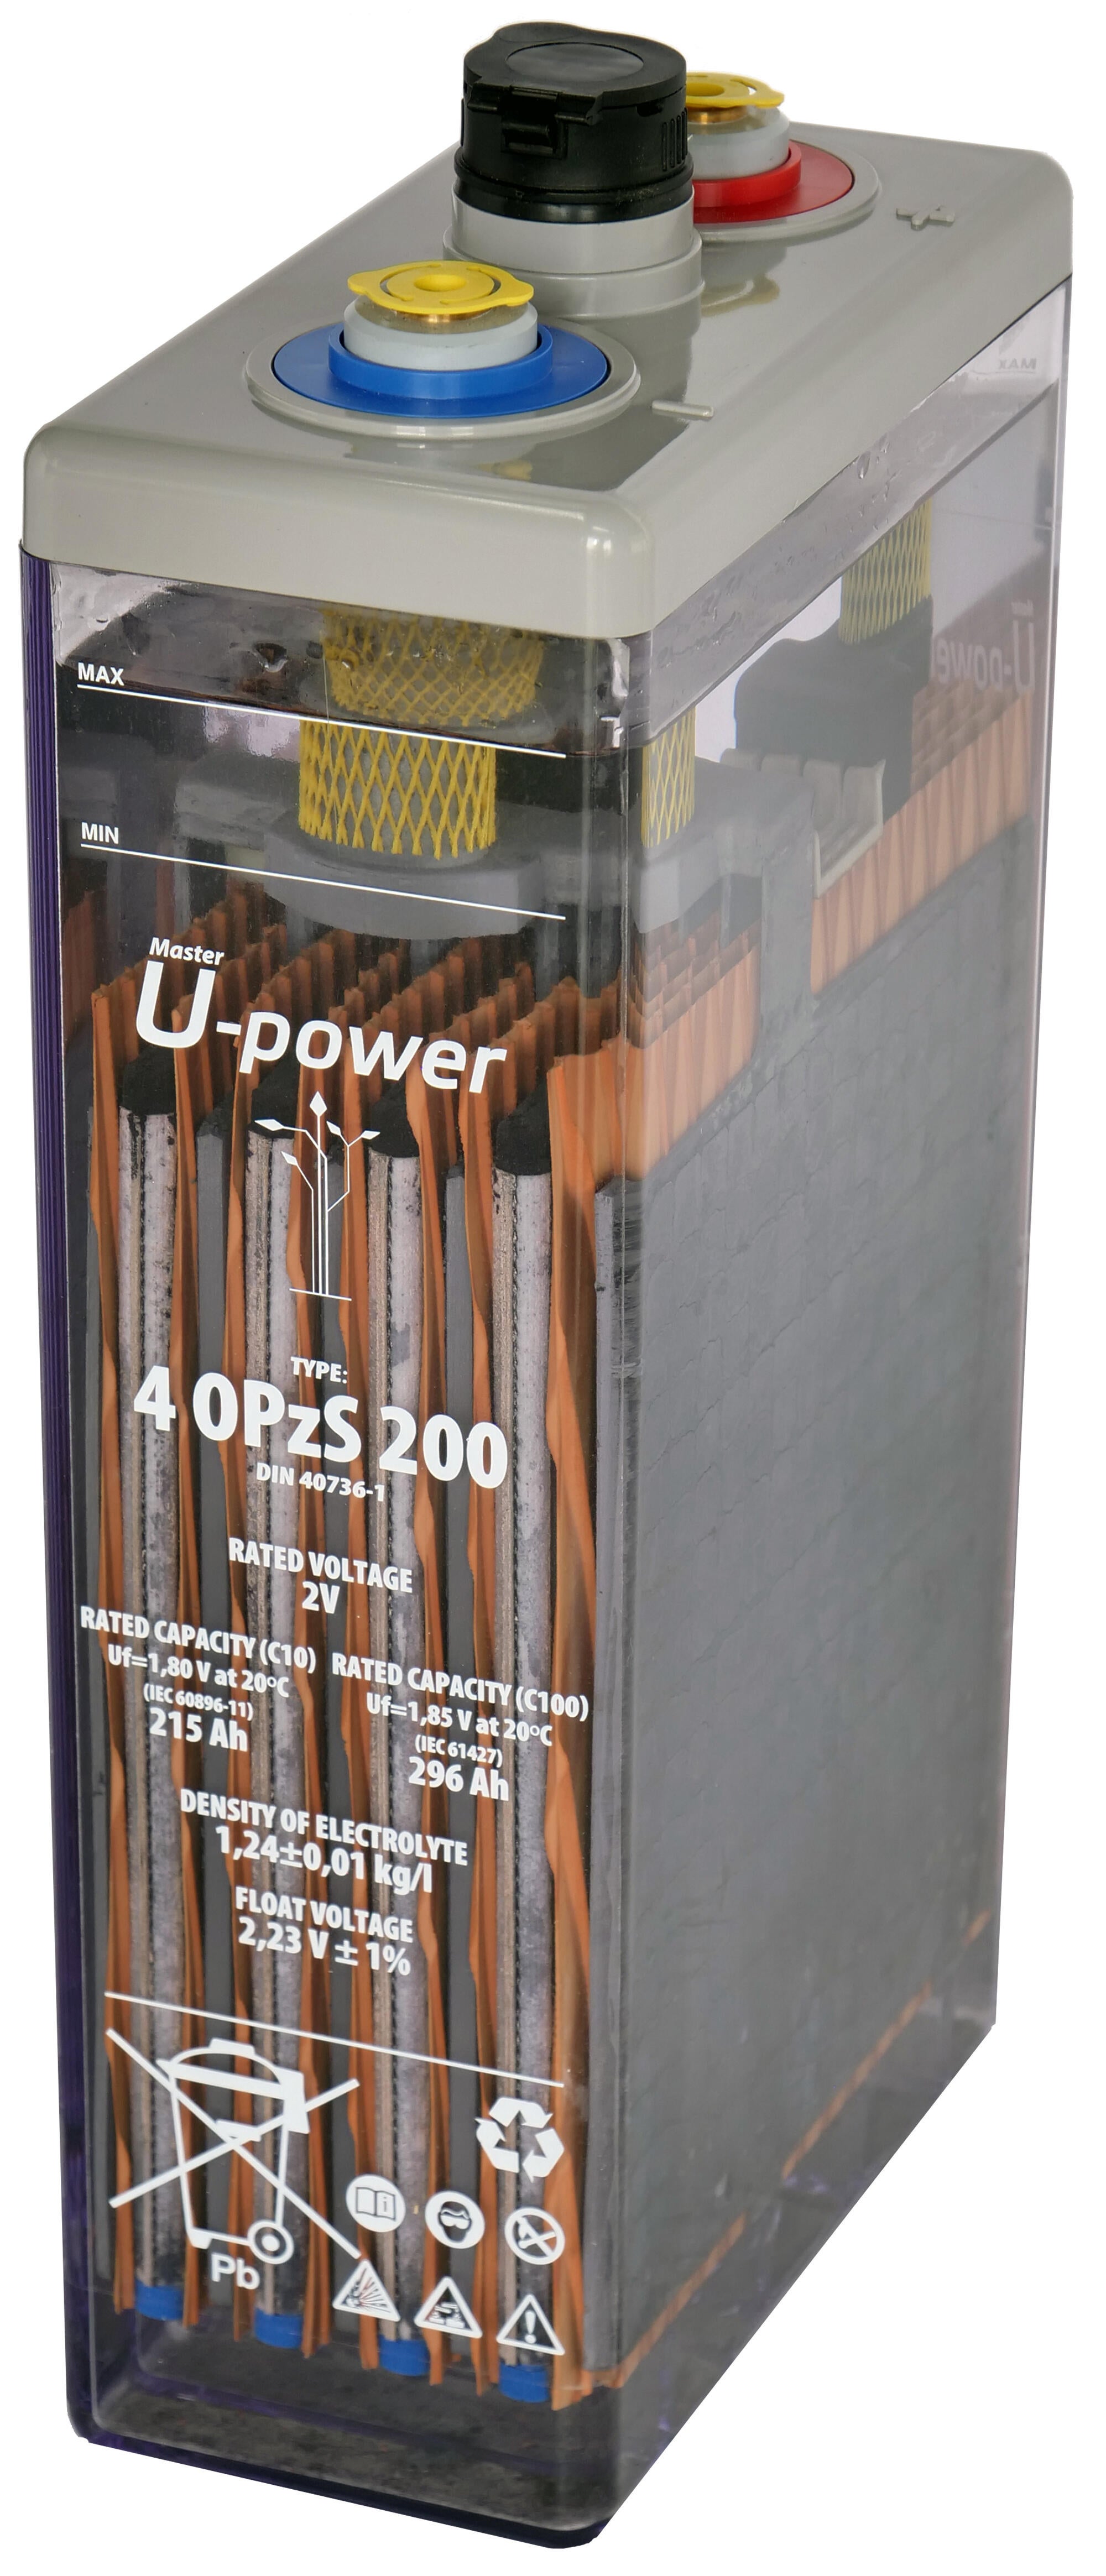 Batería solar estacionarial u-power 4 opzv 200 2v c100 338ah